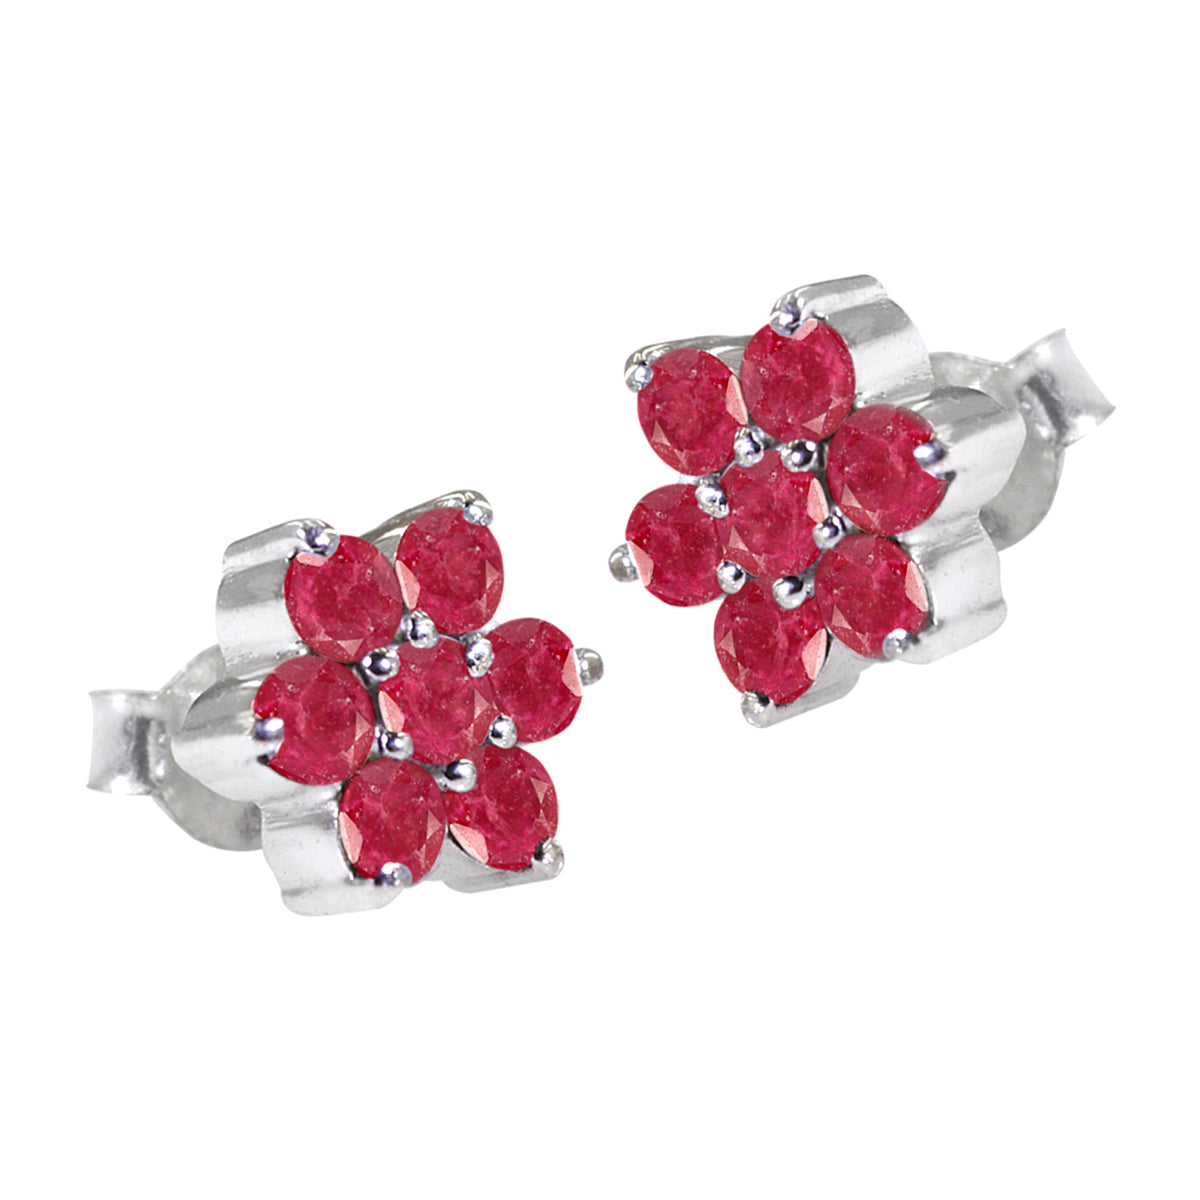 Riyo Schöne 925 Sterling Silber Ohrring Für Femme Indische Rubin Ohrring Lünette Fassung Rot Ohrring Bolzen Ohrring